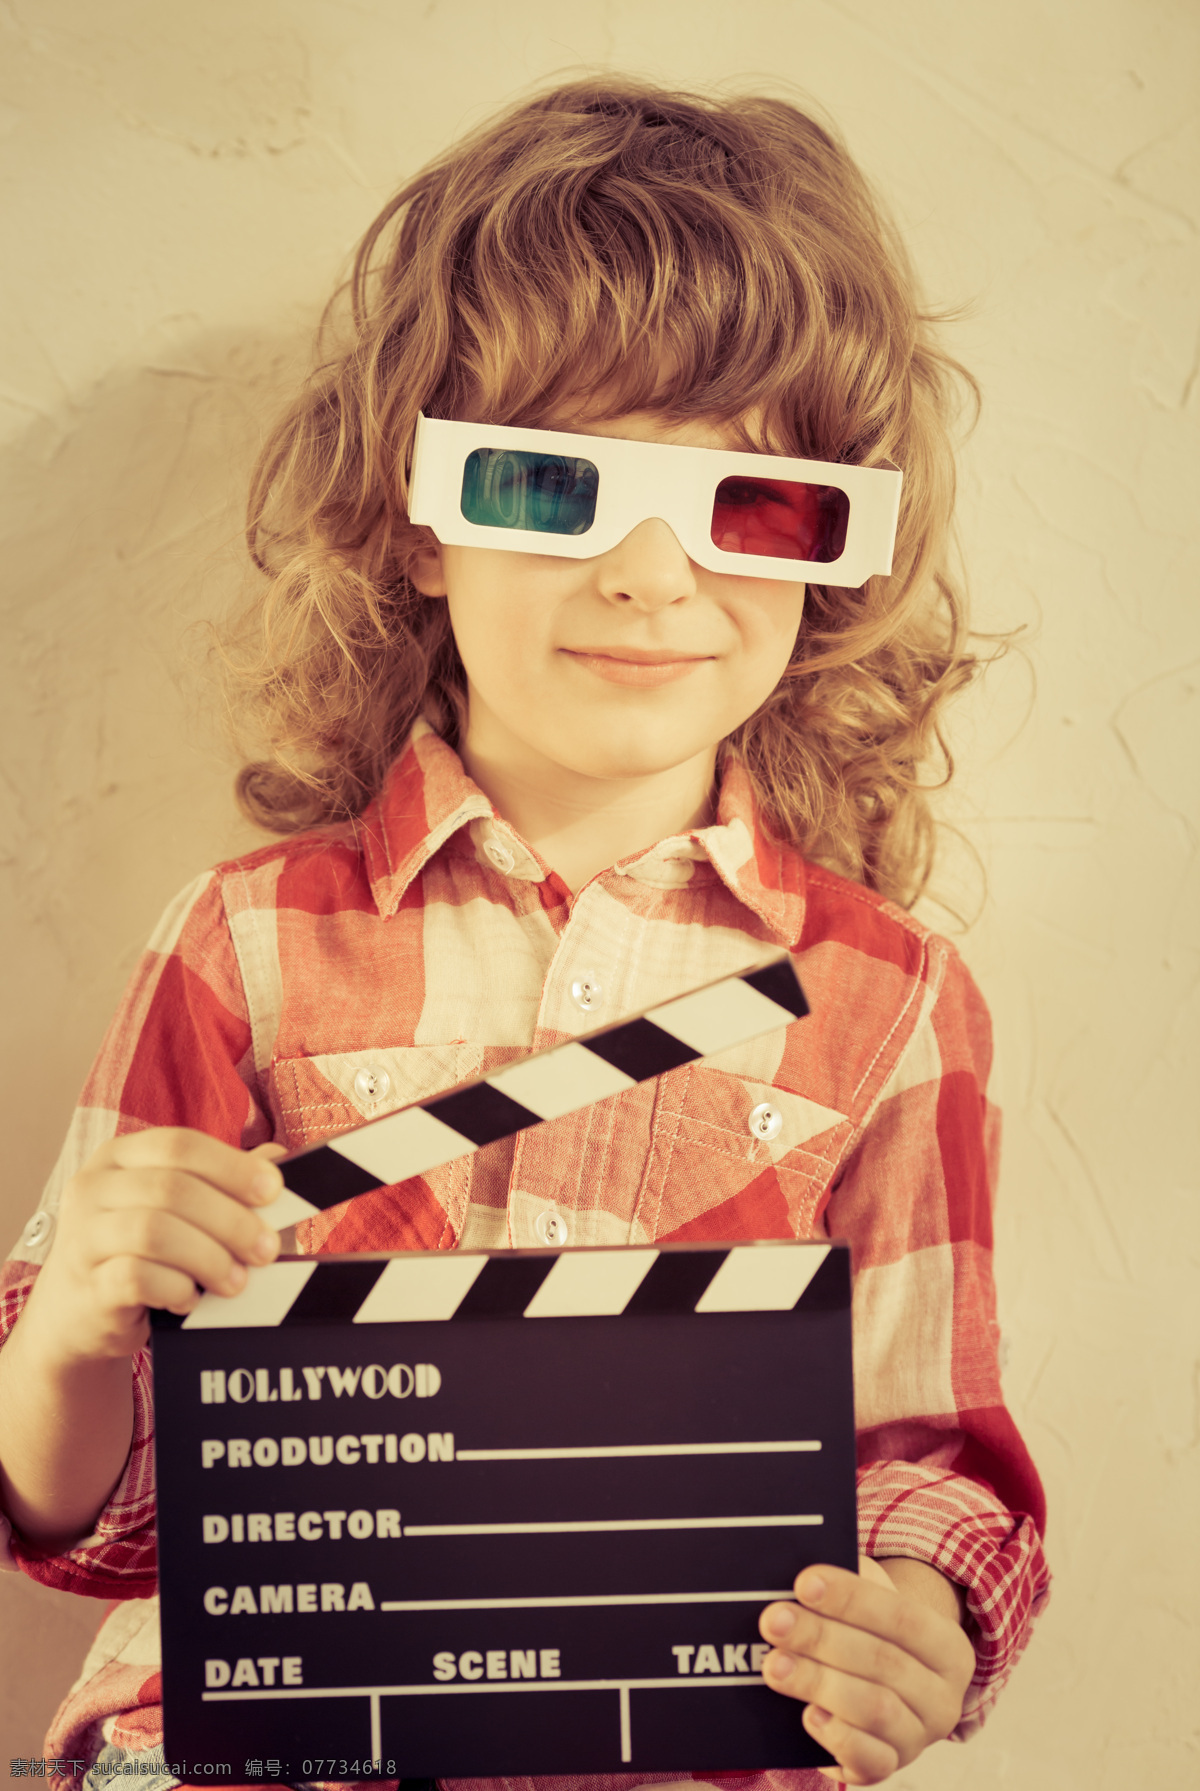 场记 板 儿童 电影 影音娱乐 3d眼镜 字母 场记板 儿童图片 人物图片